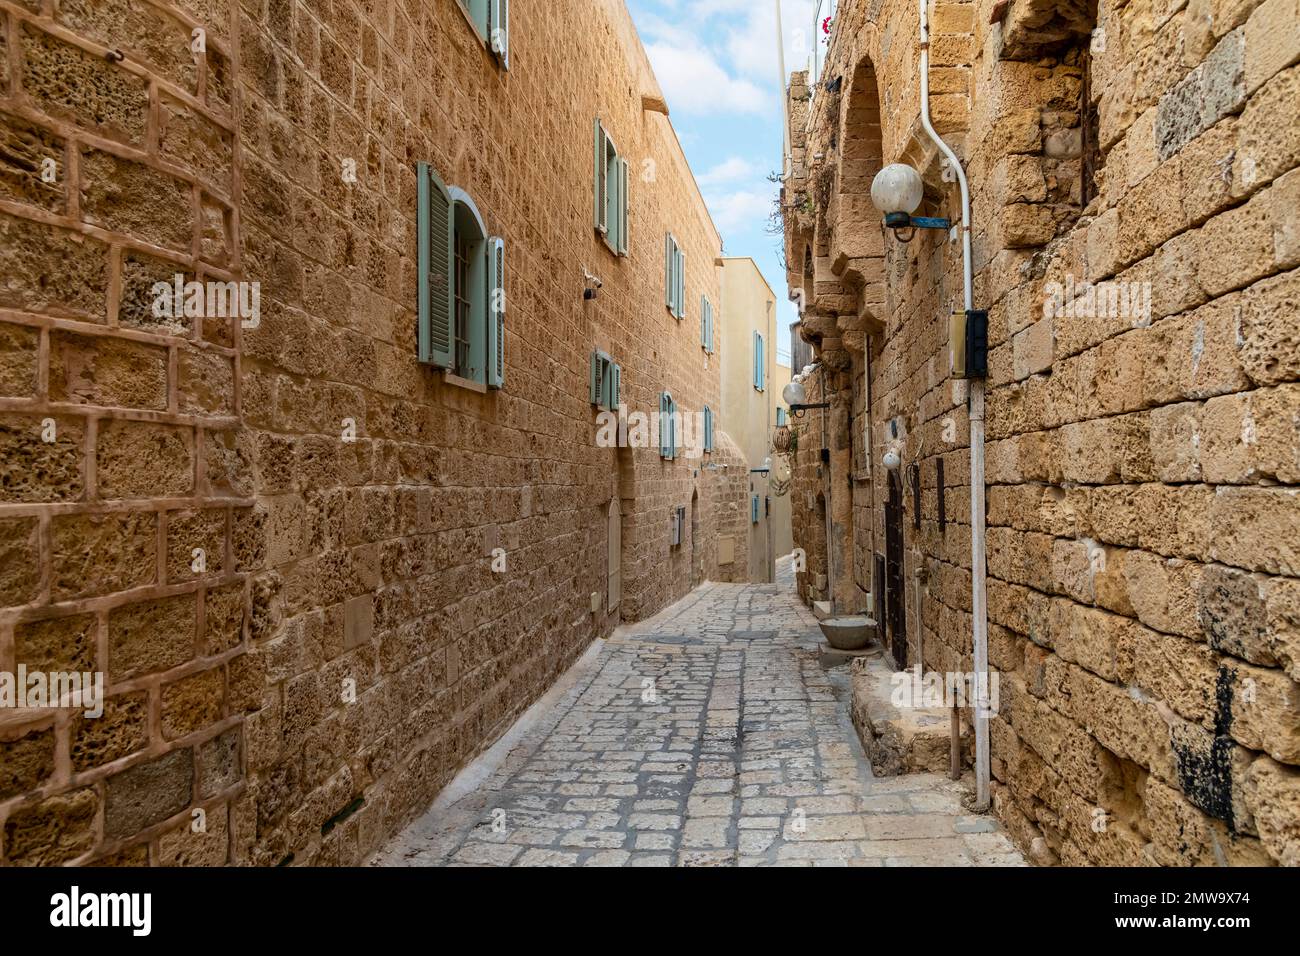 Une rue étroite dans la vieille ville historique et médiévale de Jaffa Israël. Banque D'Images